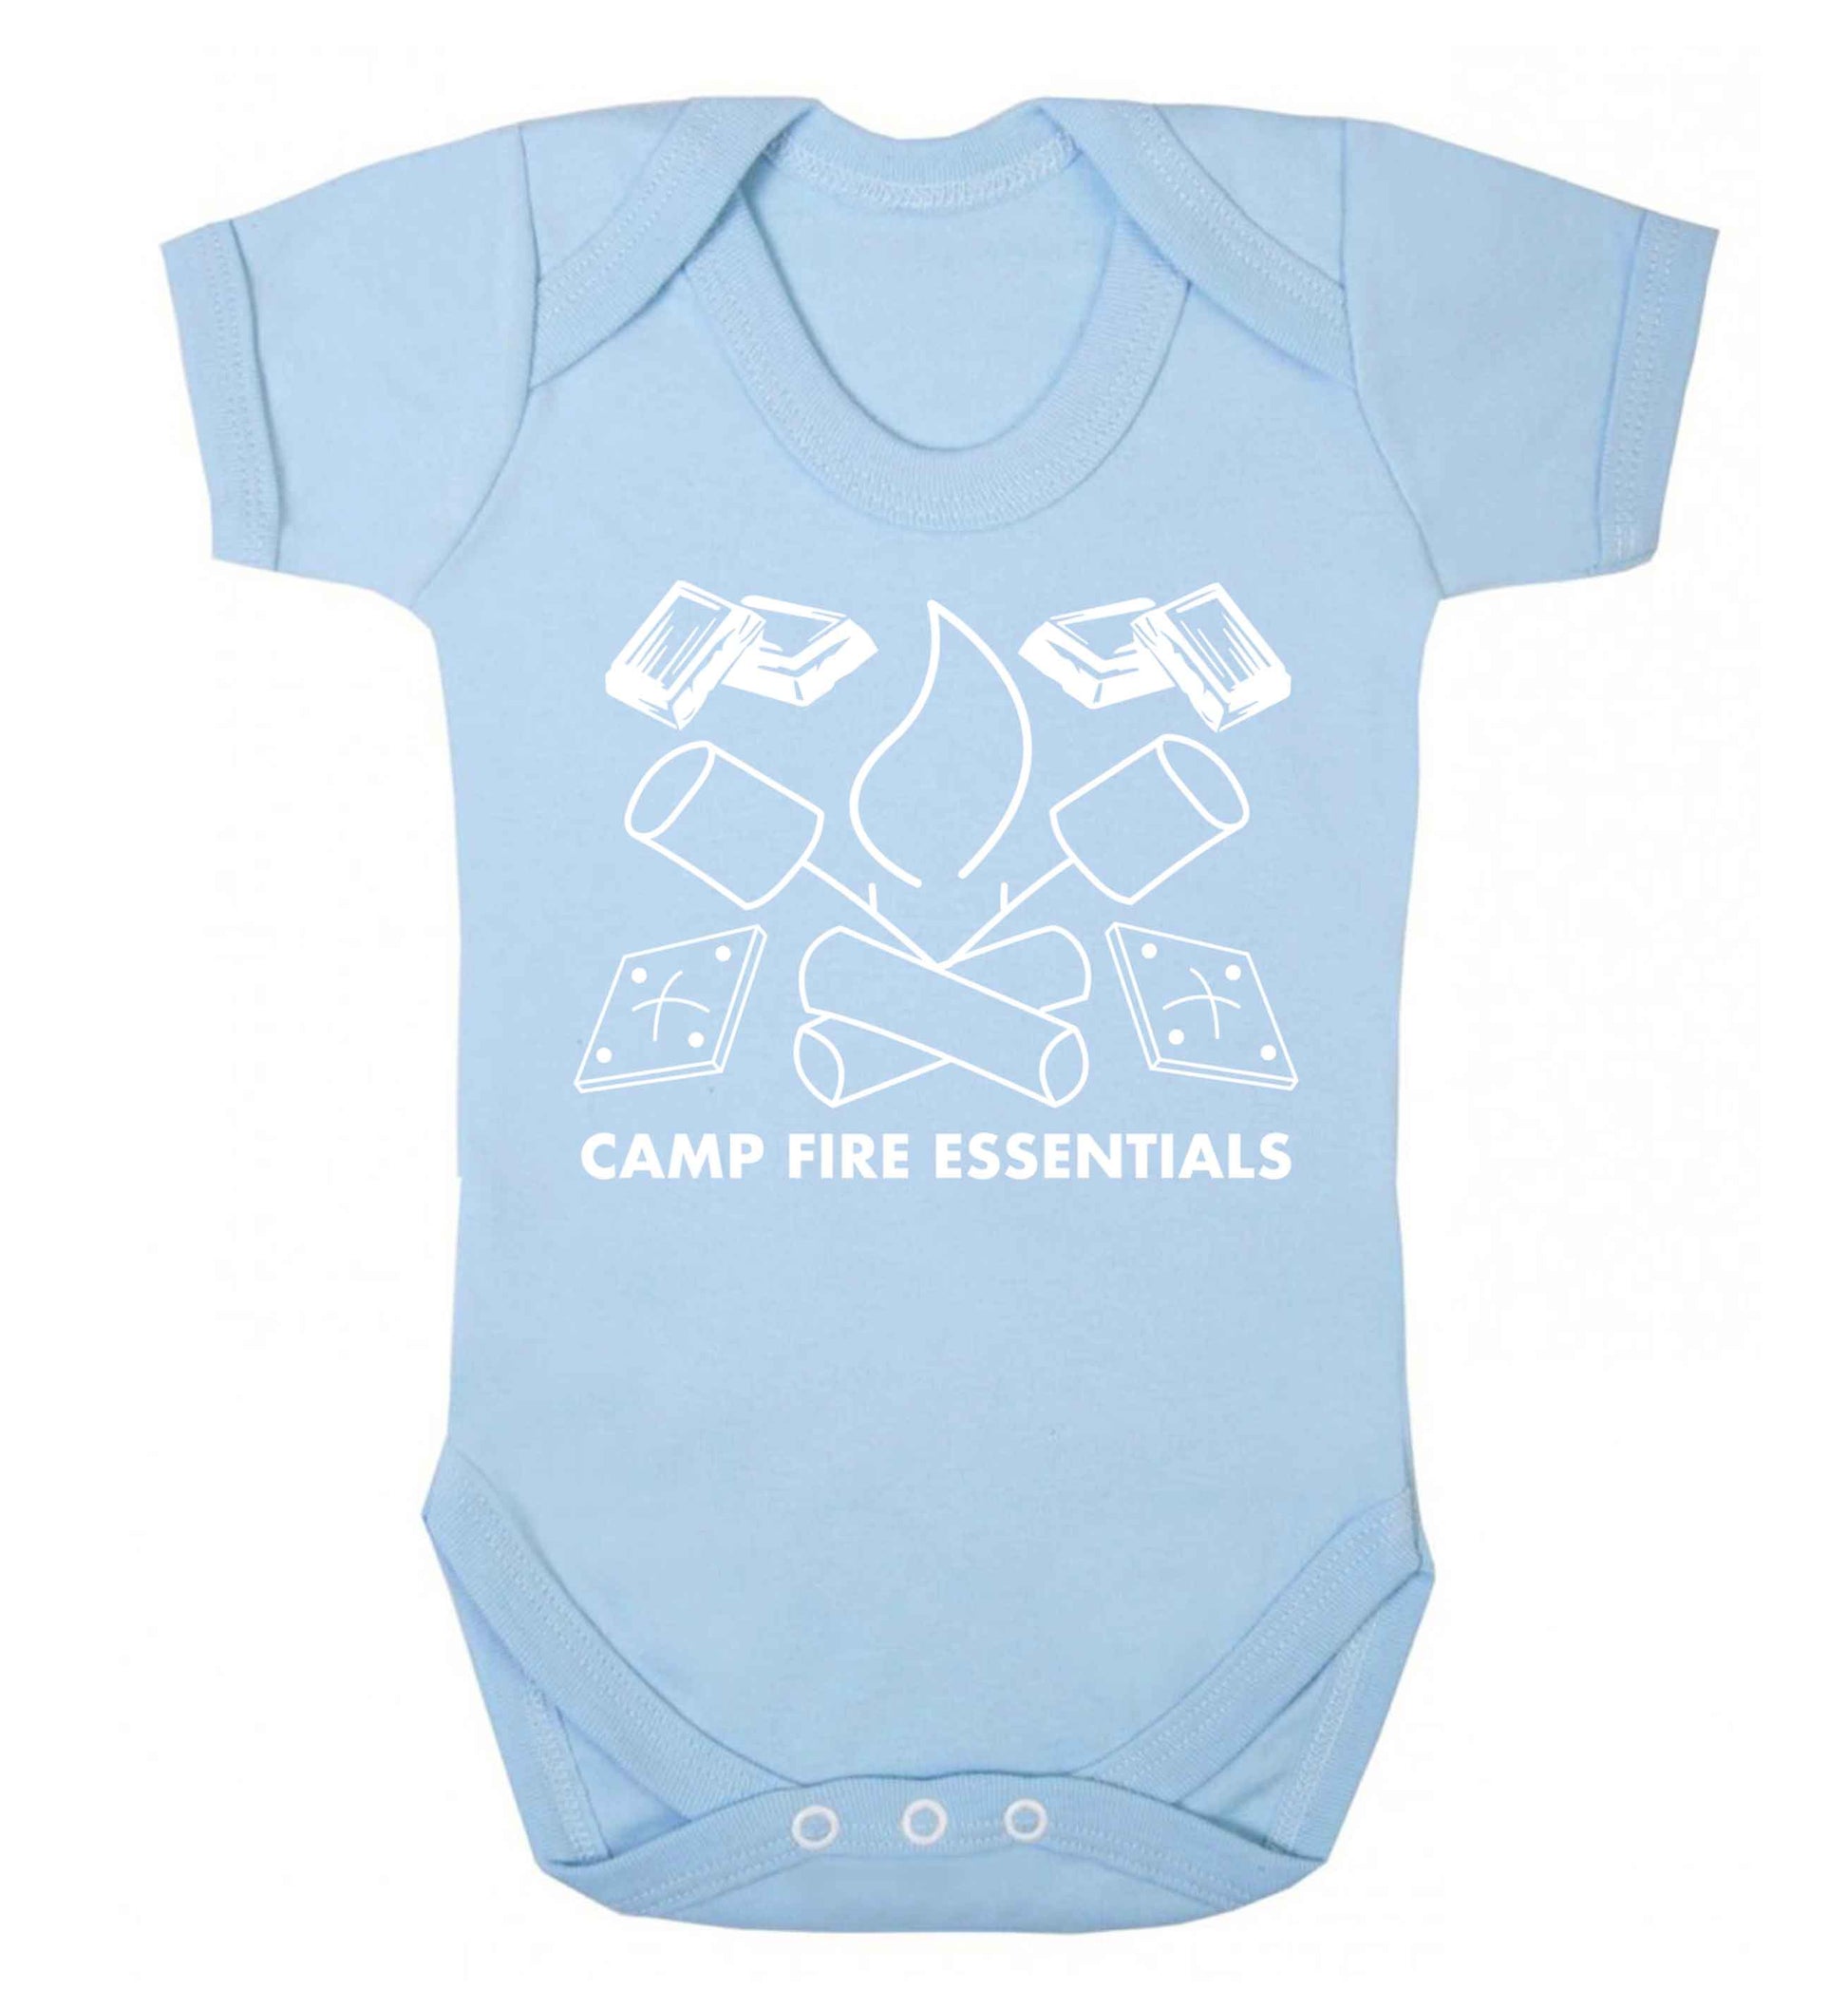 Campfire essentials Baby Vest pale blue 18-24 months